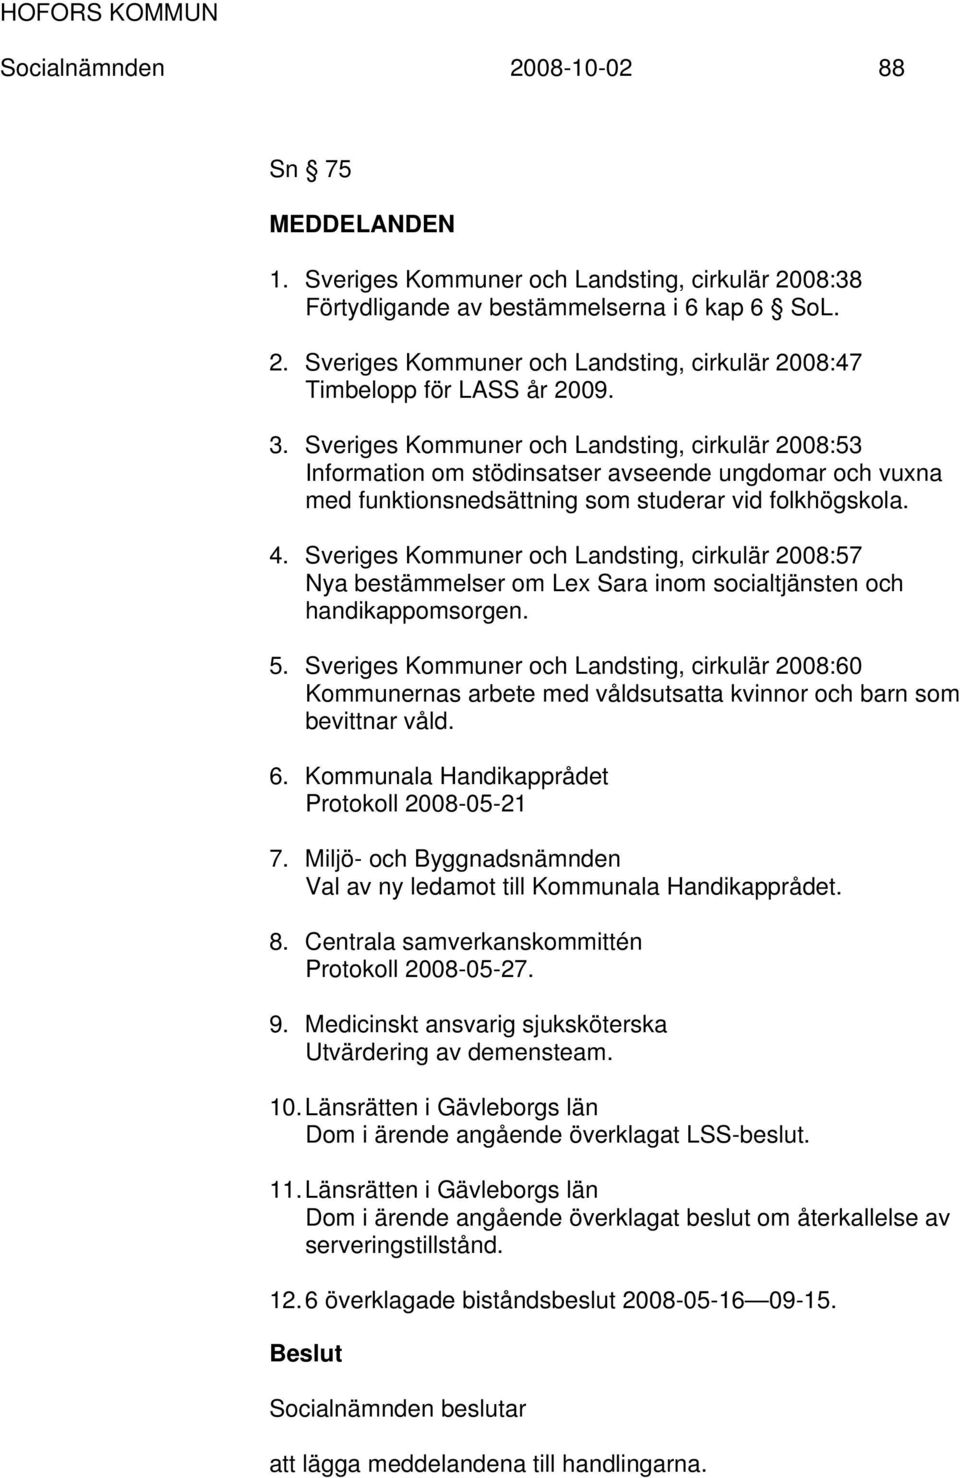 Sveriges Kommuner och Landsting, cirkulär 2008:57 Nya bestämmelser om Lex Sara inom socialtjänsten och handikappomsorgen. 5.